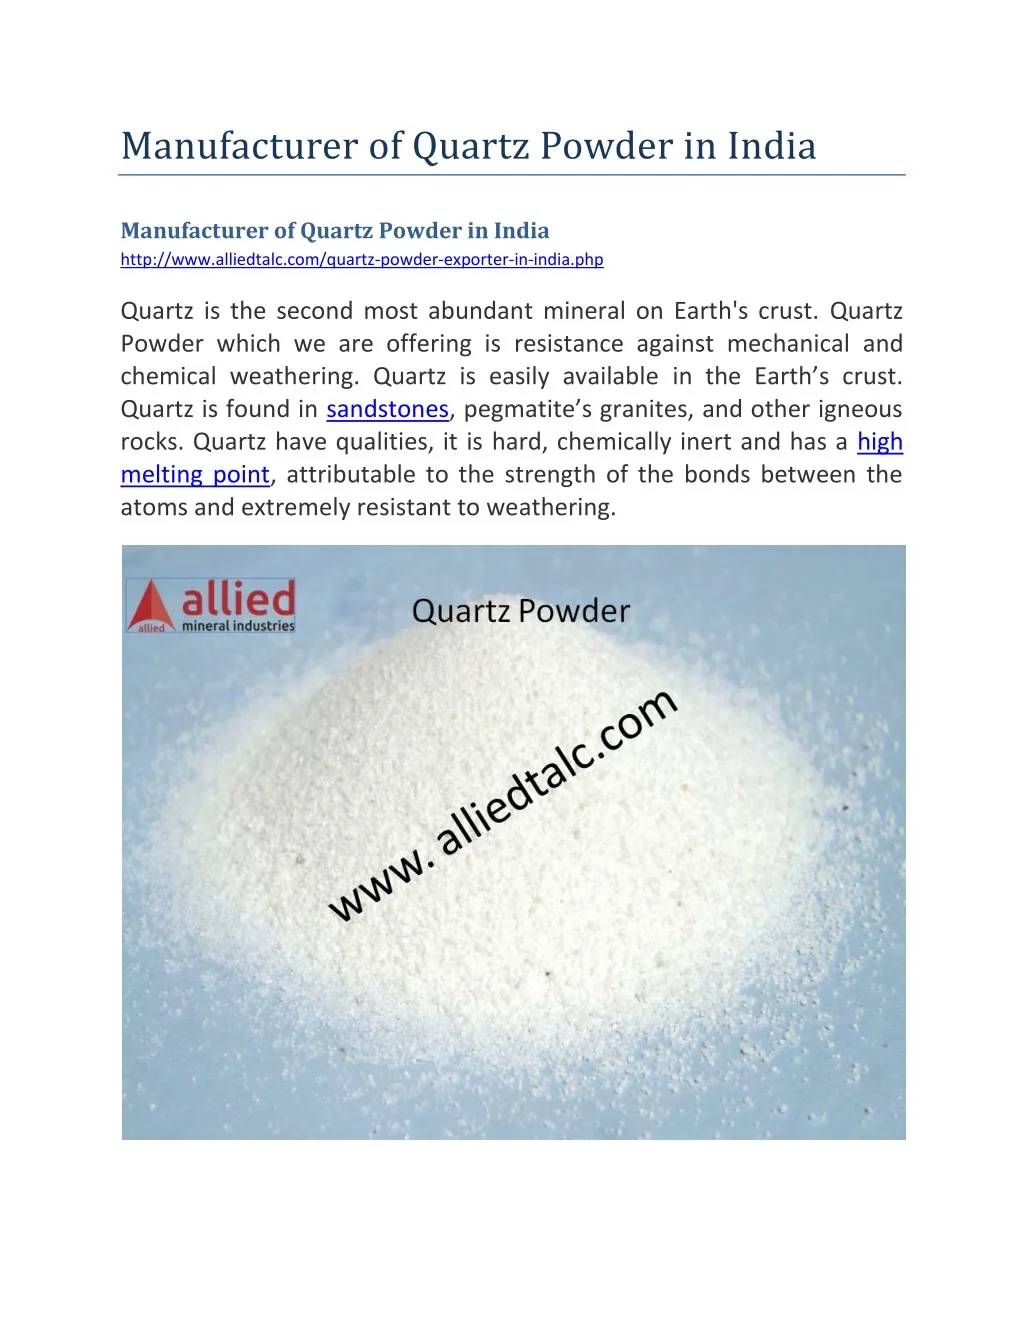 manufacturer of quartz powder in india